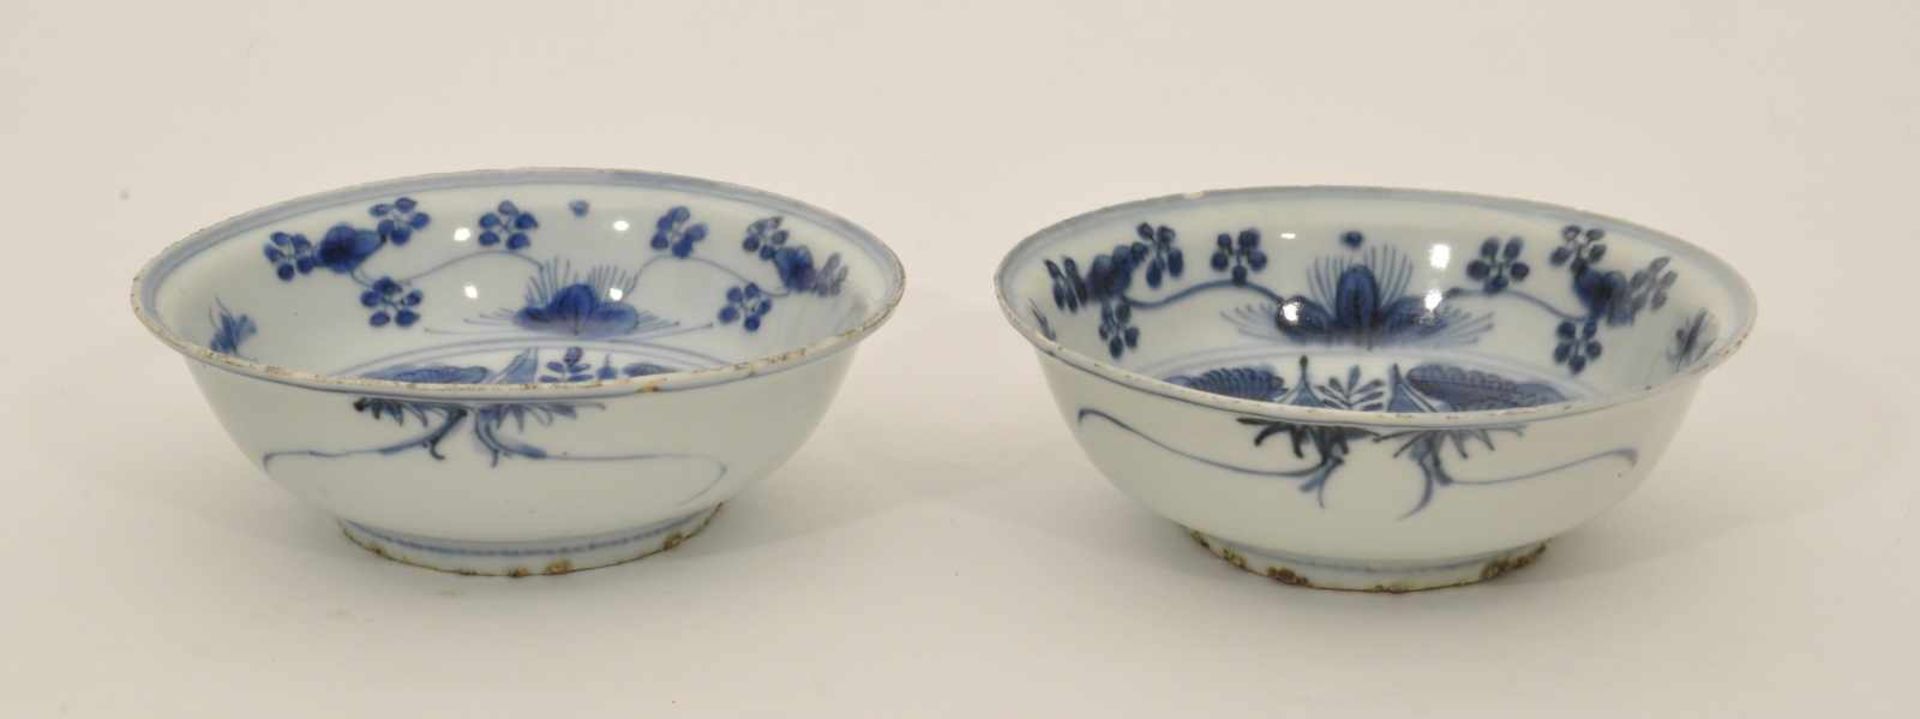 2 Schalen China, 19. Jh., Porzellan, Blaudekor, D. 15,5 cm, H. 5,5 cm - Bild 2 aus 3